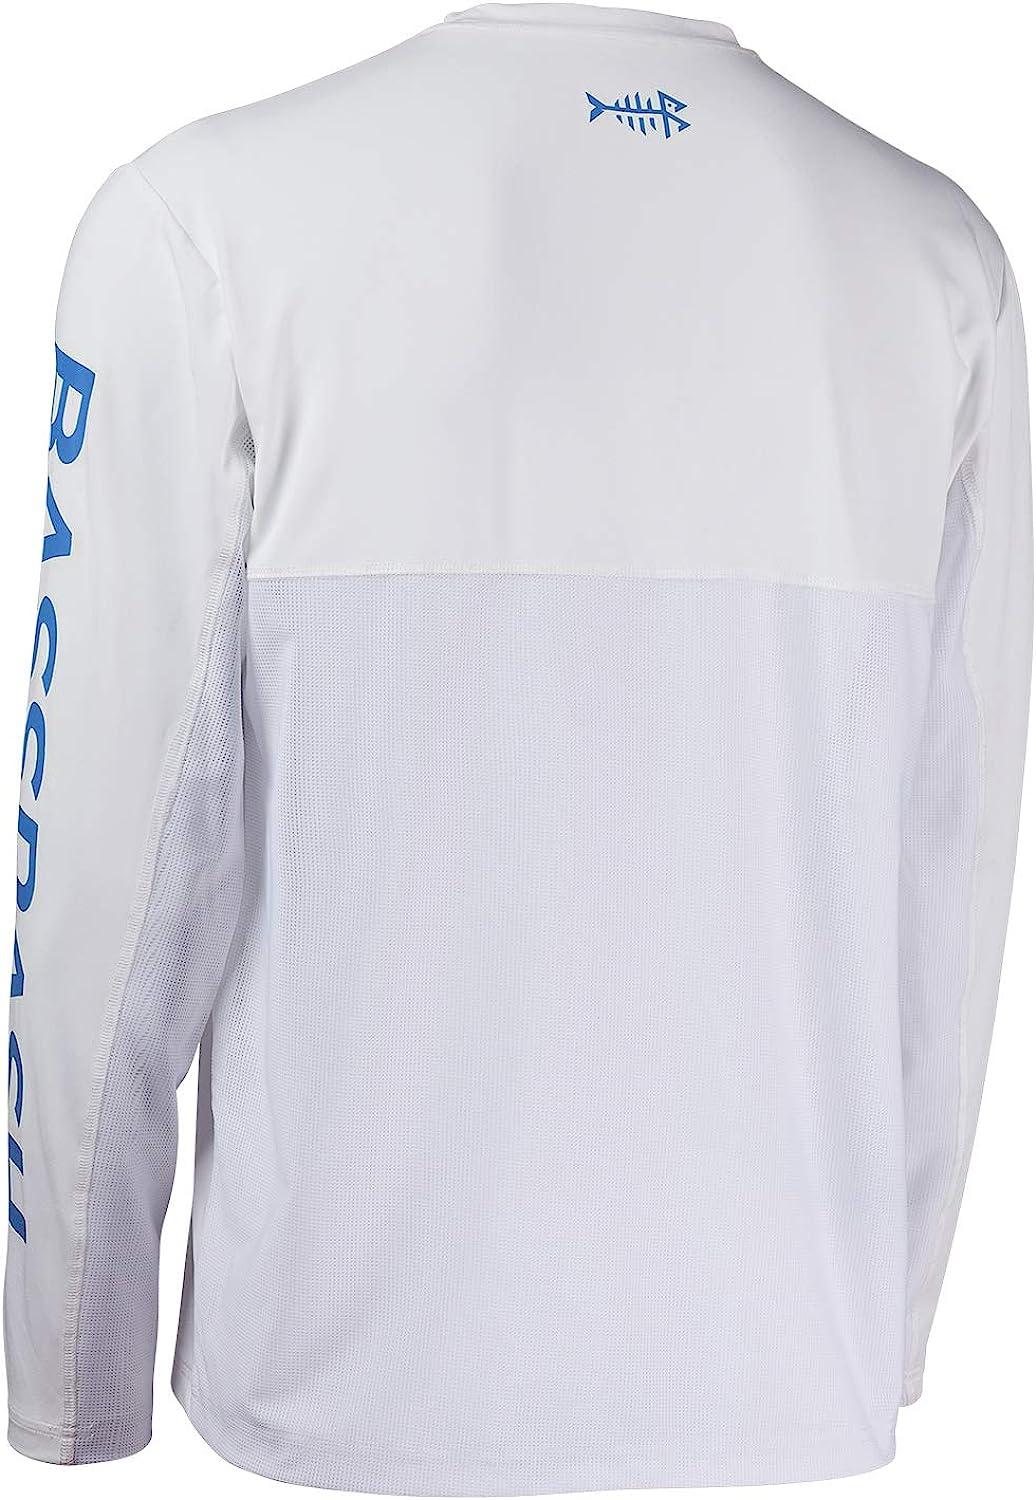 BASSDASH Fishing T Shirts for Men UV Sun Protection UPF 50+ Long